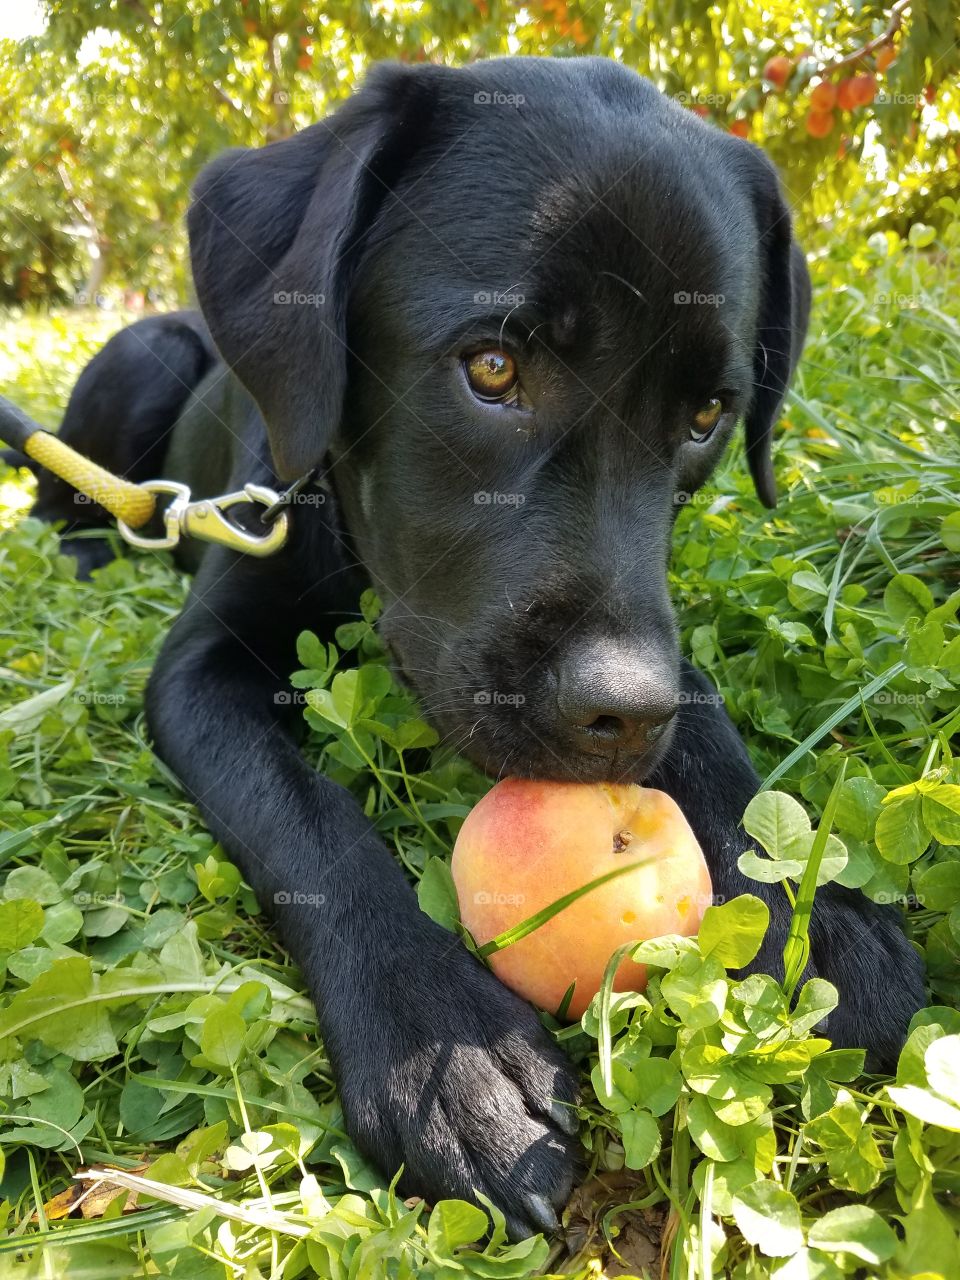 Black Labrador enjoys peach